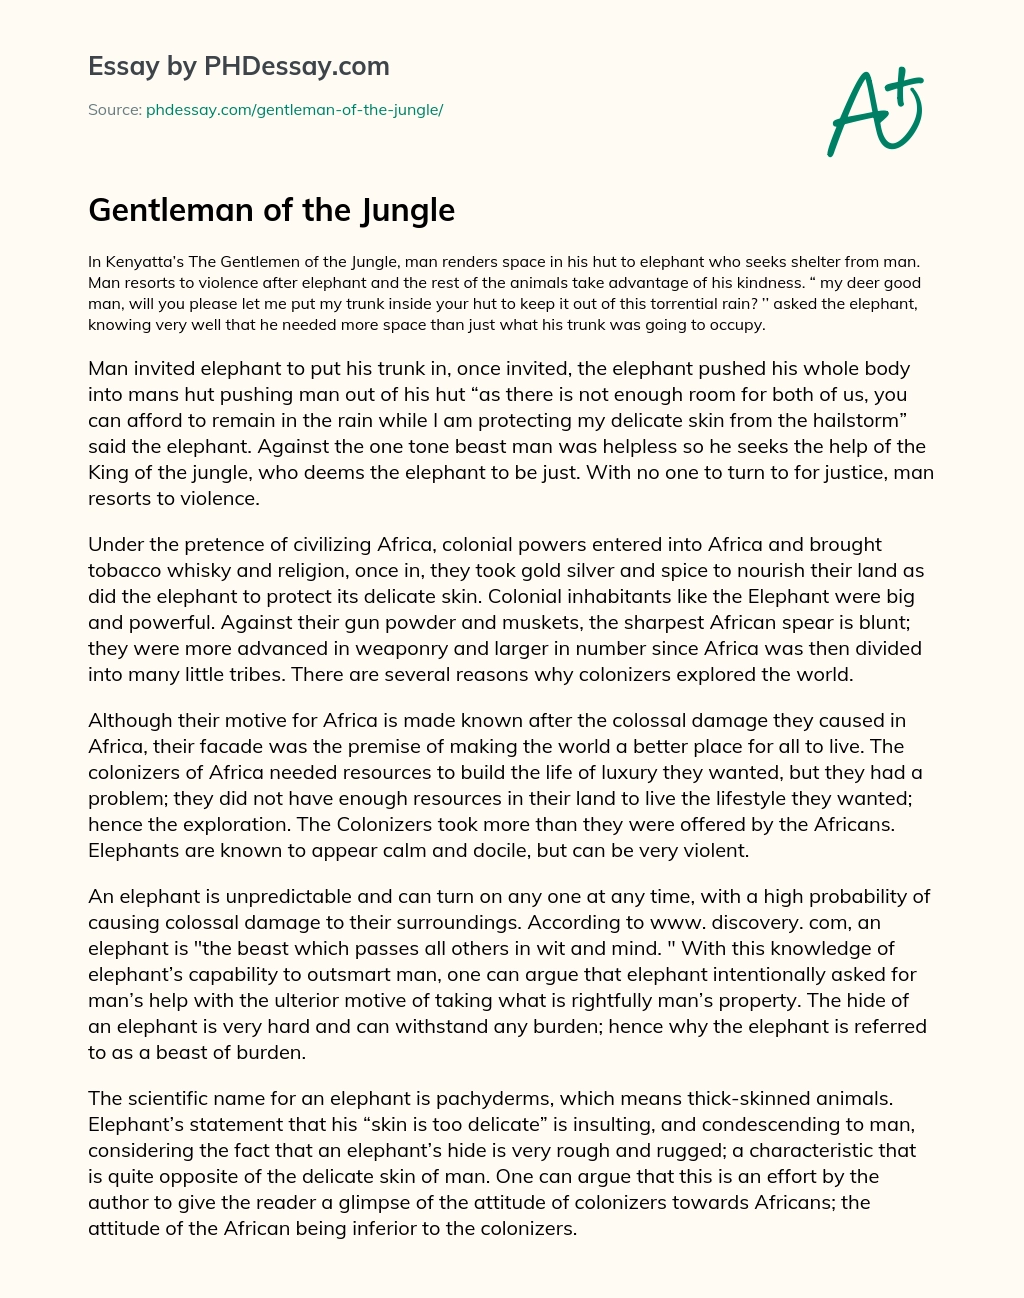 Gentleman of the Jungle essay